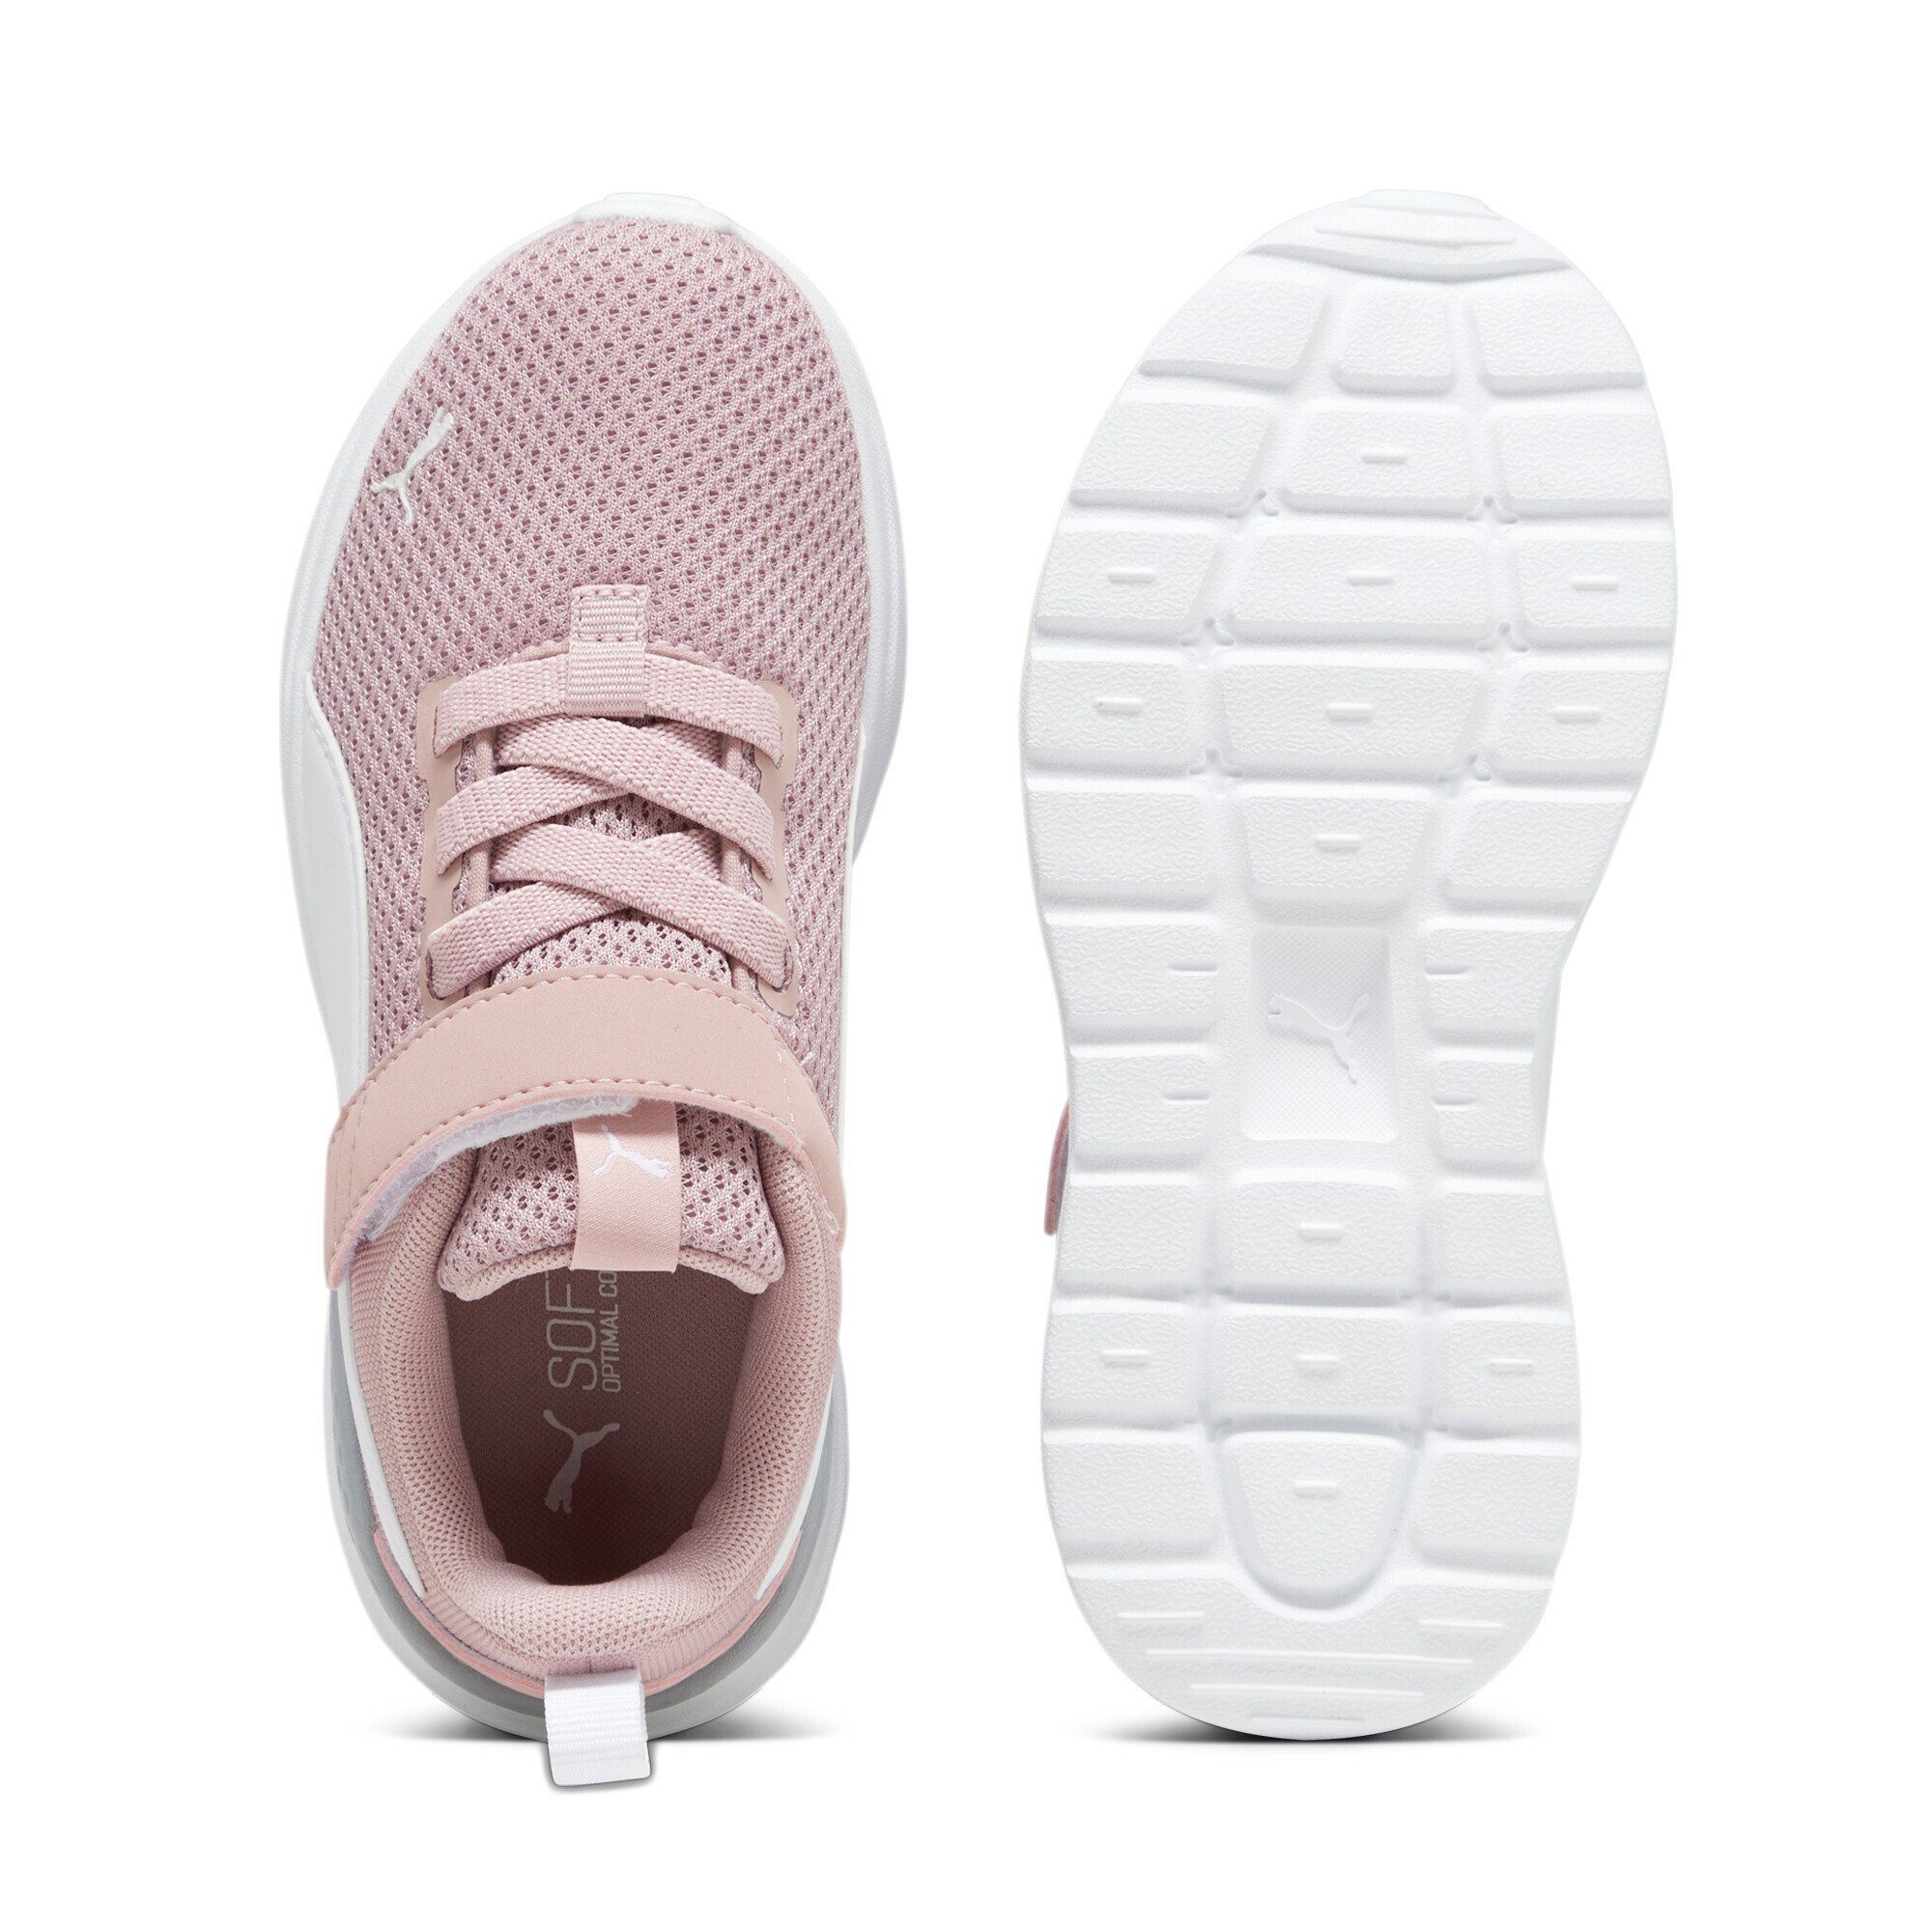 Anzarun Sneaker Peach Pink Lite Laufschuh Kids PUMA White Smoothie